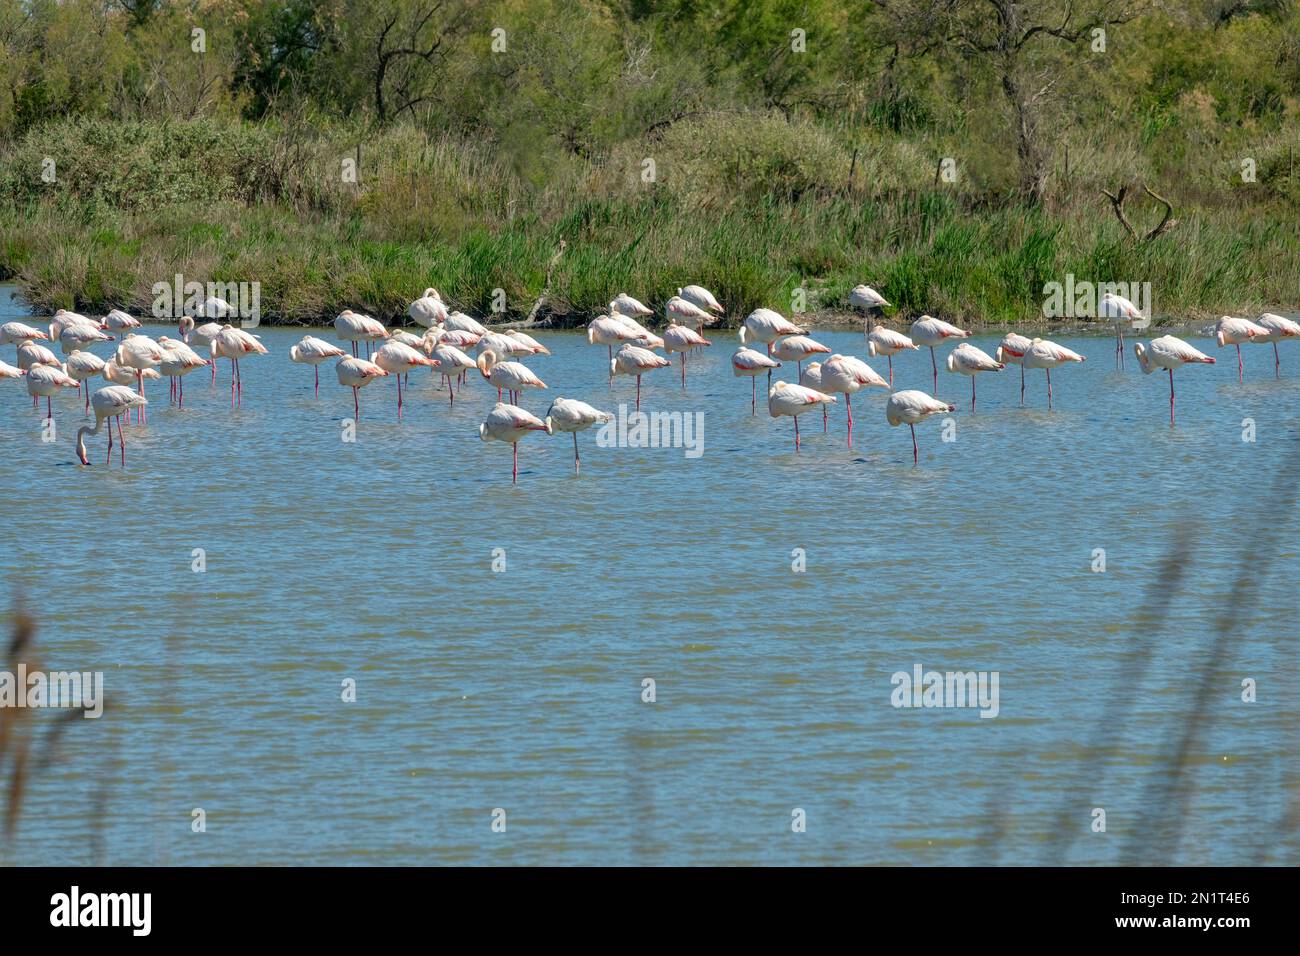 Paysage d'une zone humide en Camargue, avec le Grand Flamingos (Phoenicopterus roseus) dans l'eau, Bouches du Rhône, Sud de la France Banque D'Images